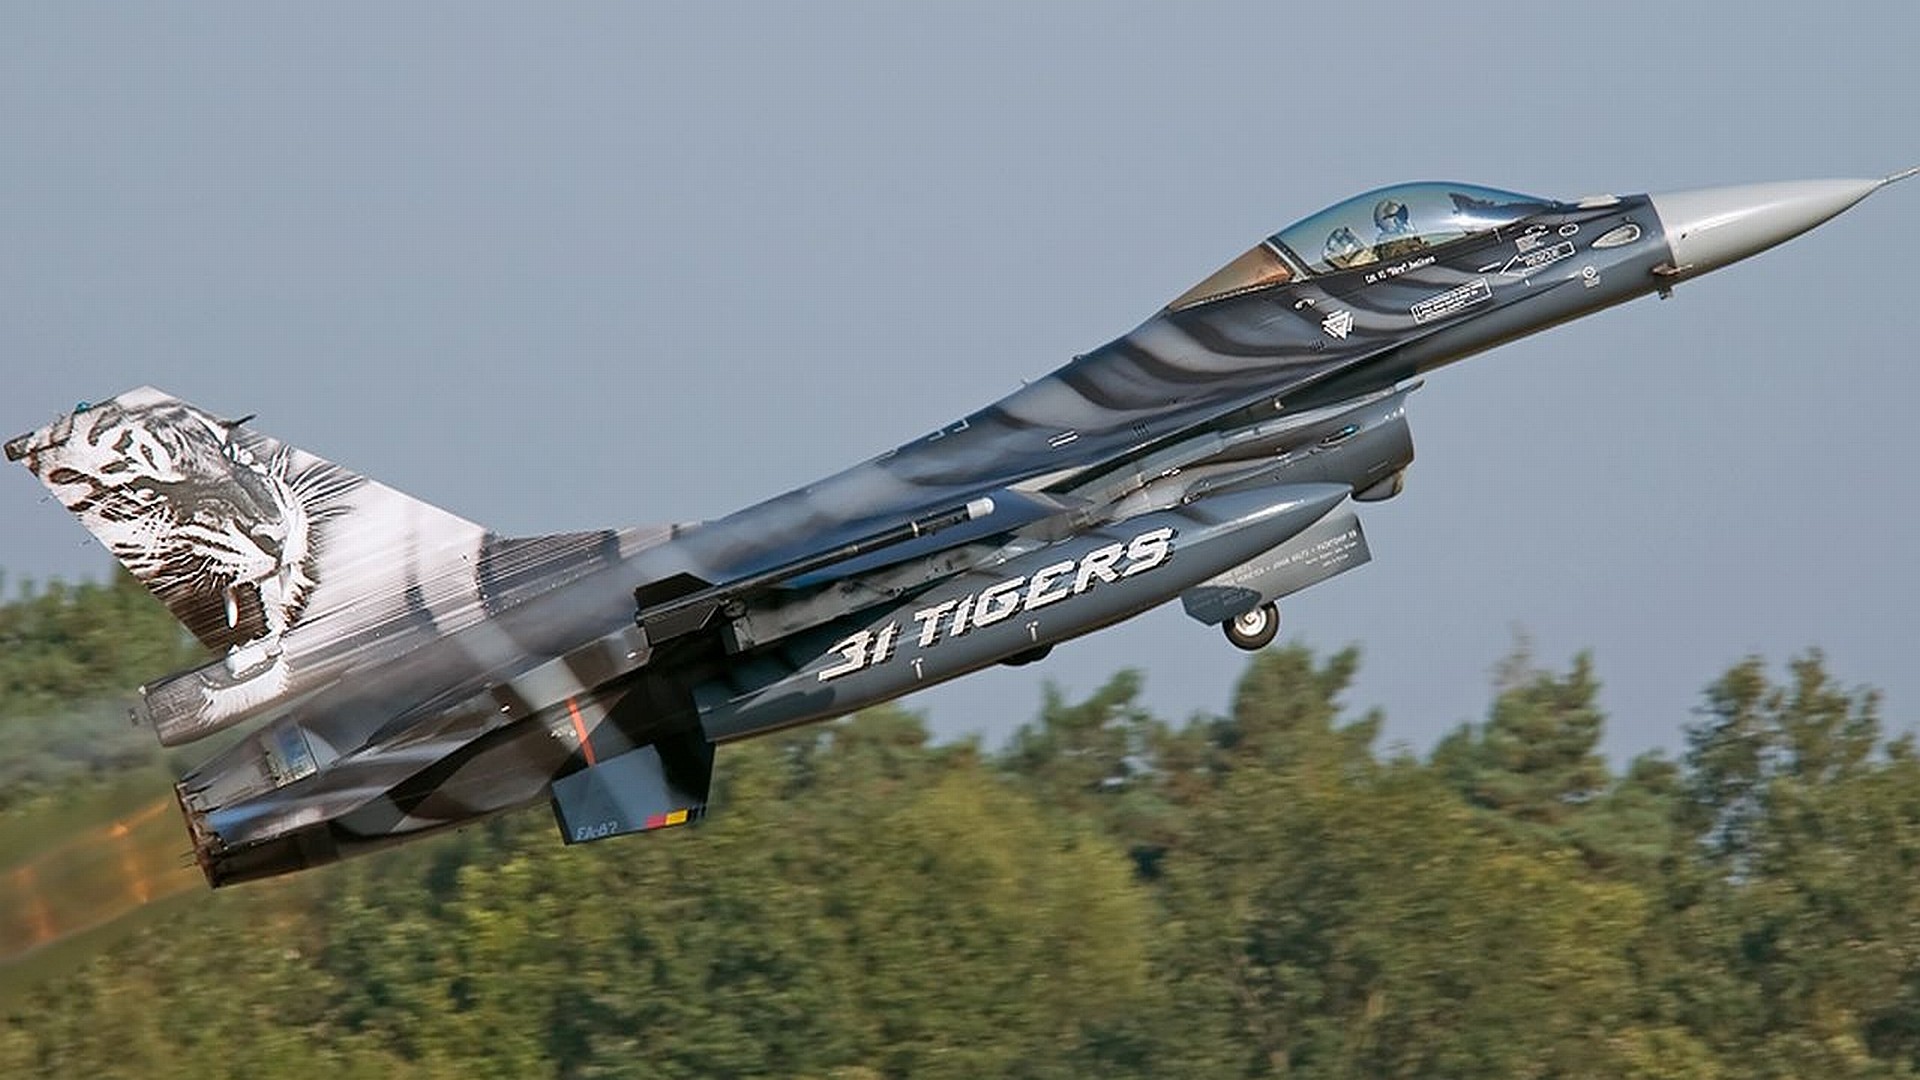 1920x1080 General Dynamics F-16 Fighting Falcon hd